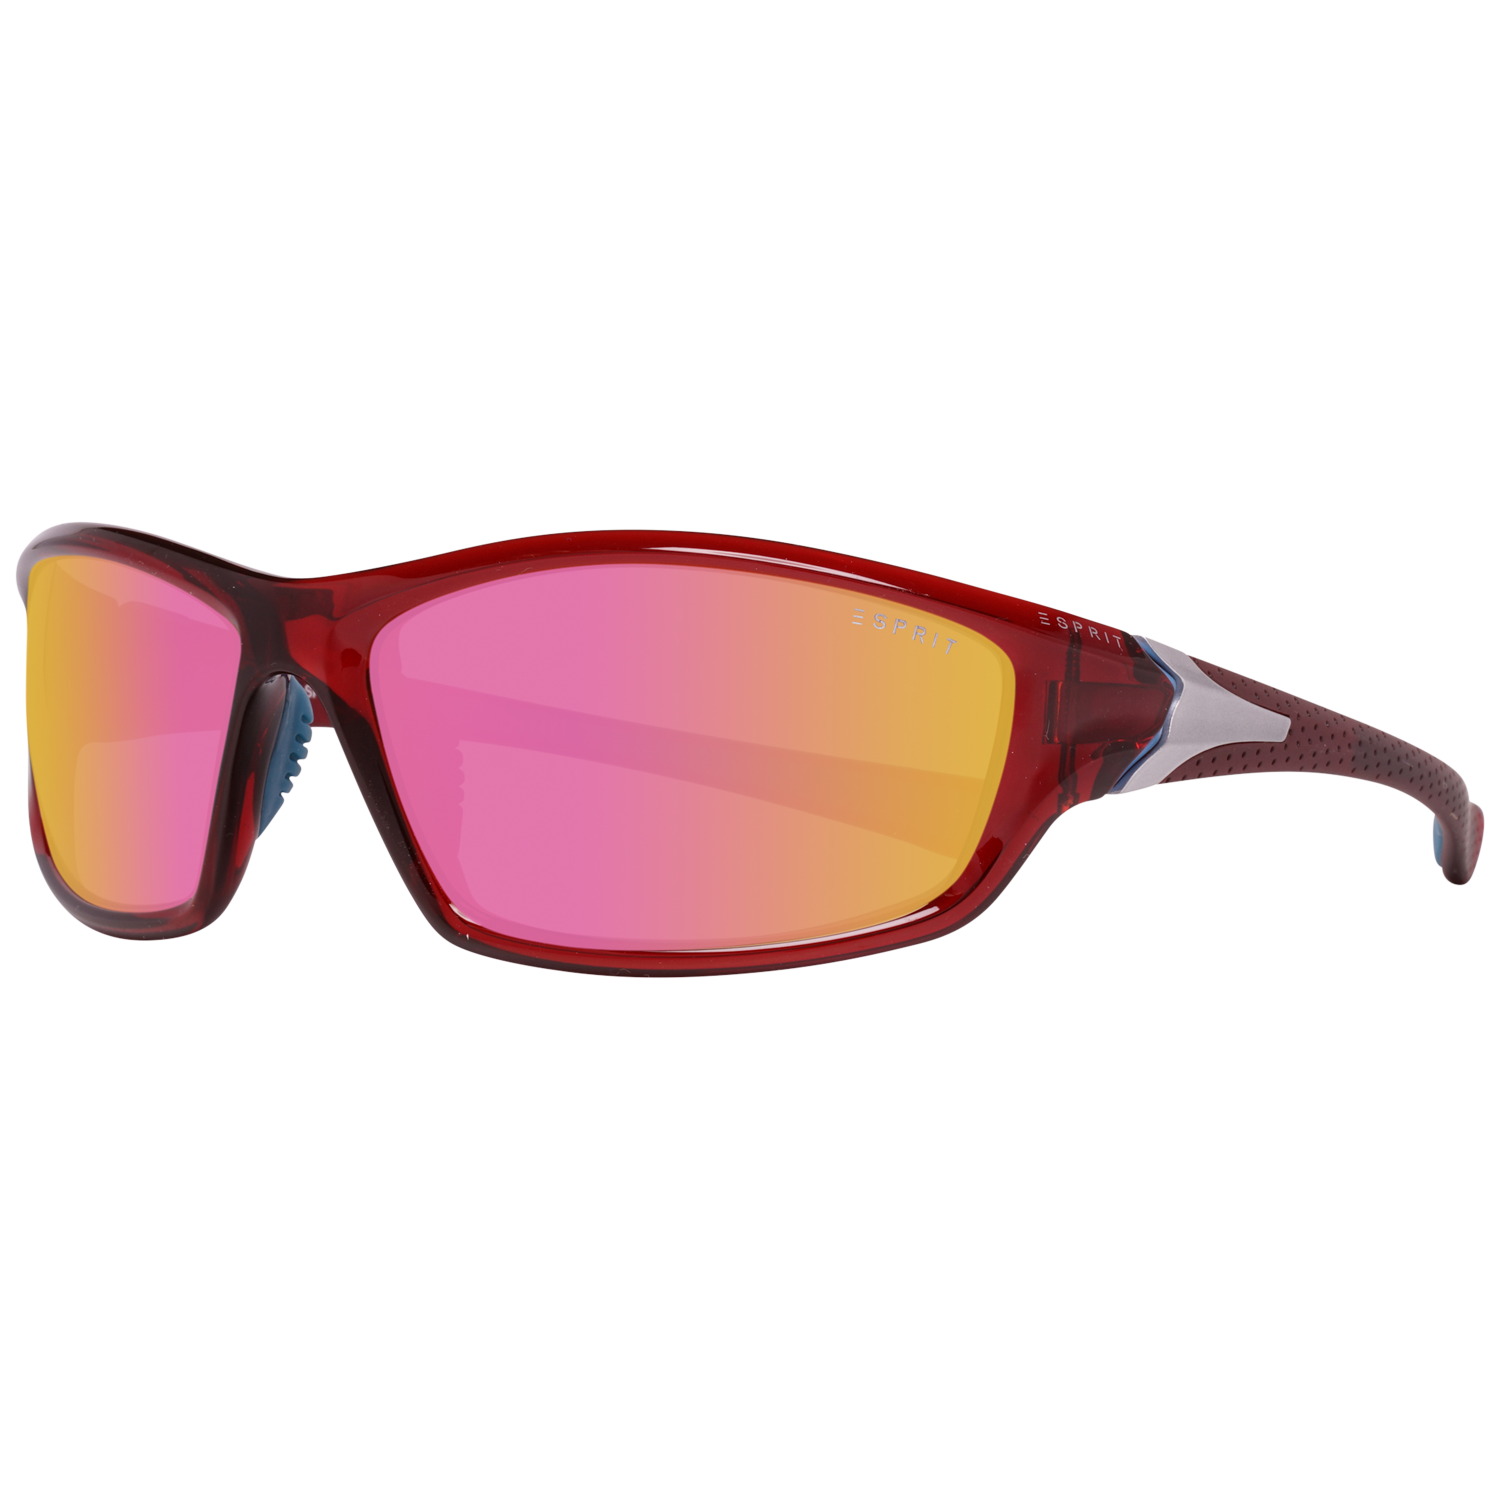 Esprit Sunglasses ET19579 531 63 Red